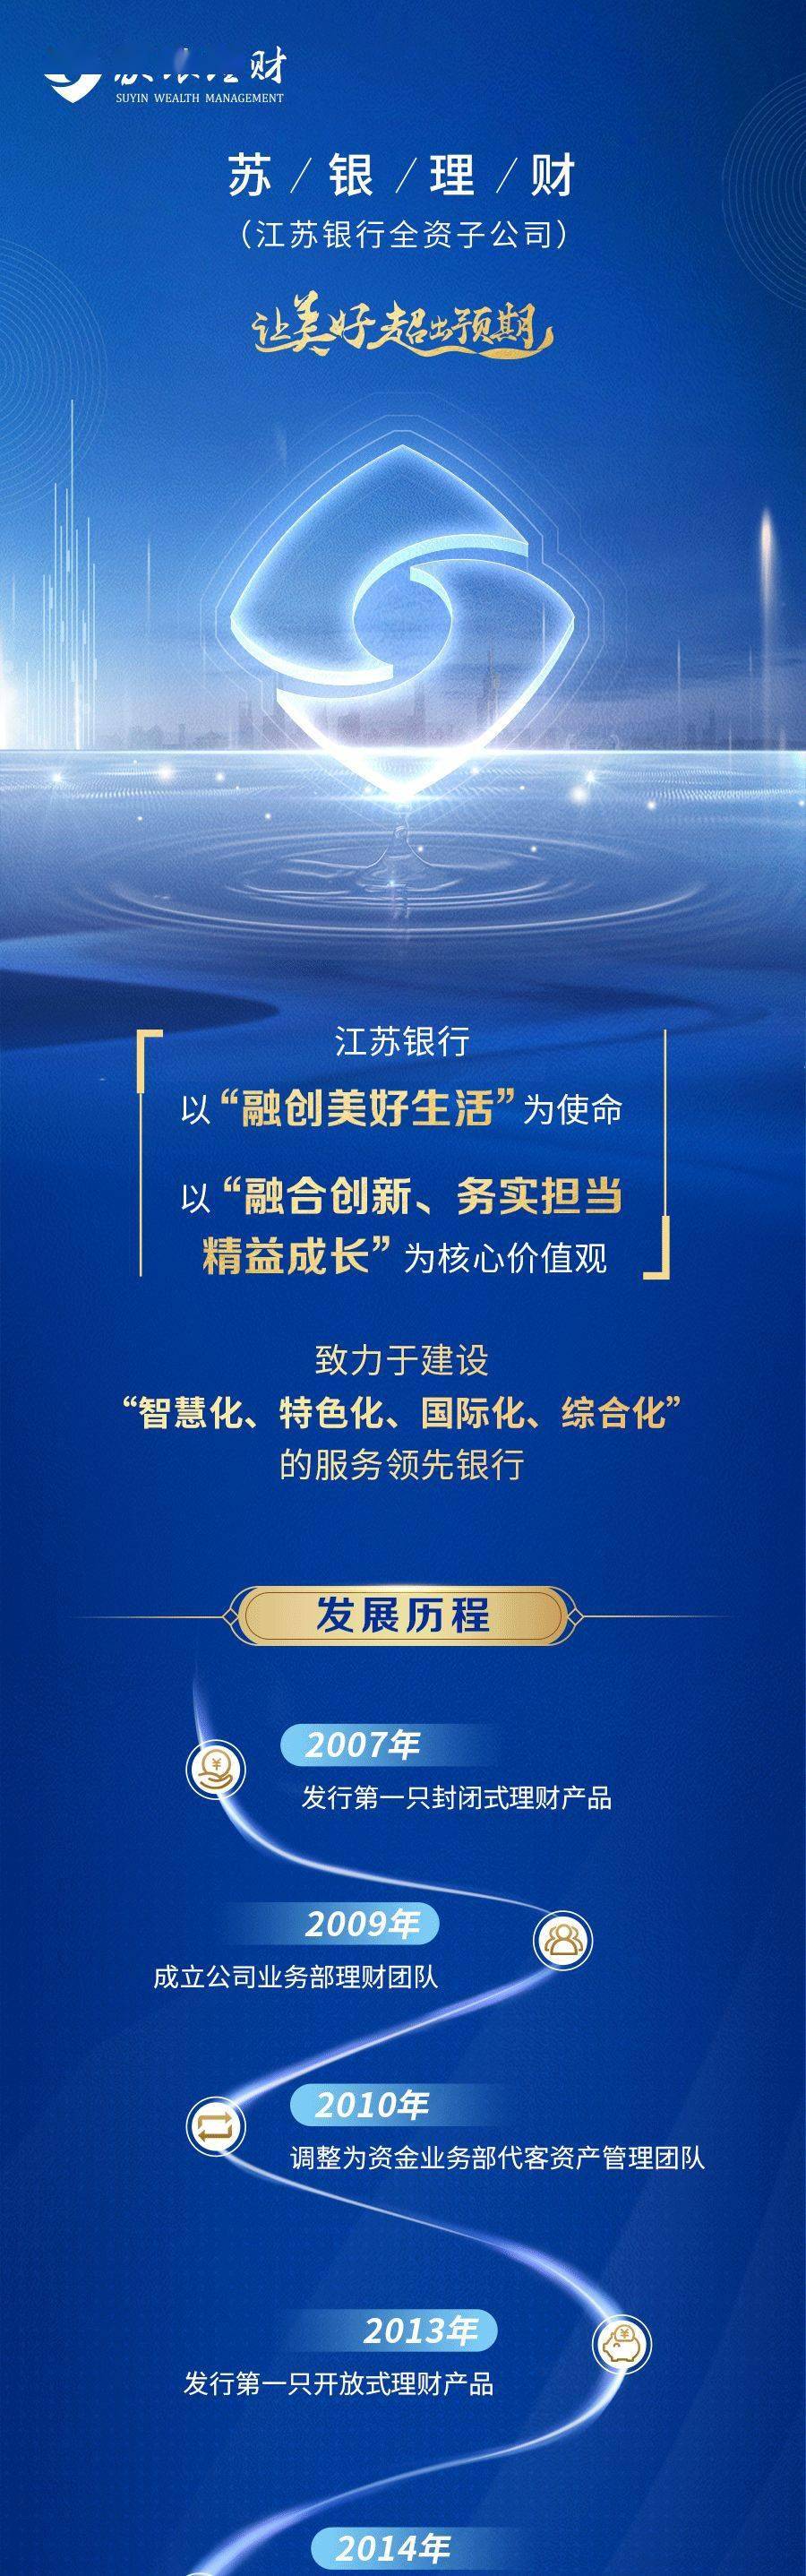 江hth华体会苏银行全资理财2019年12月获准筹建20亿人民币